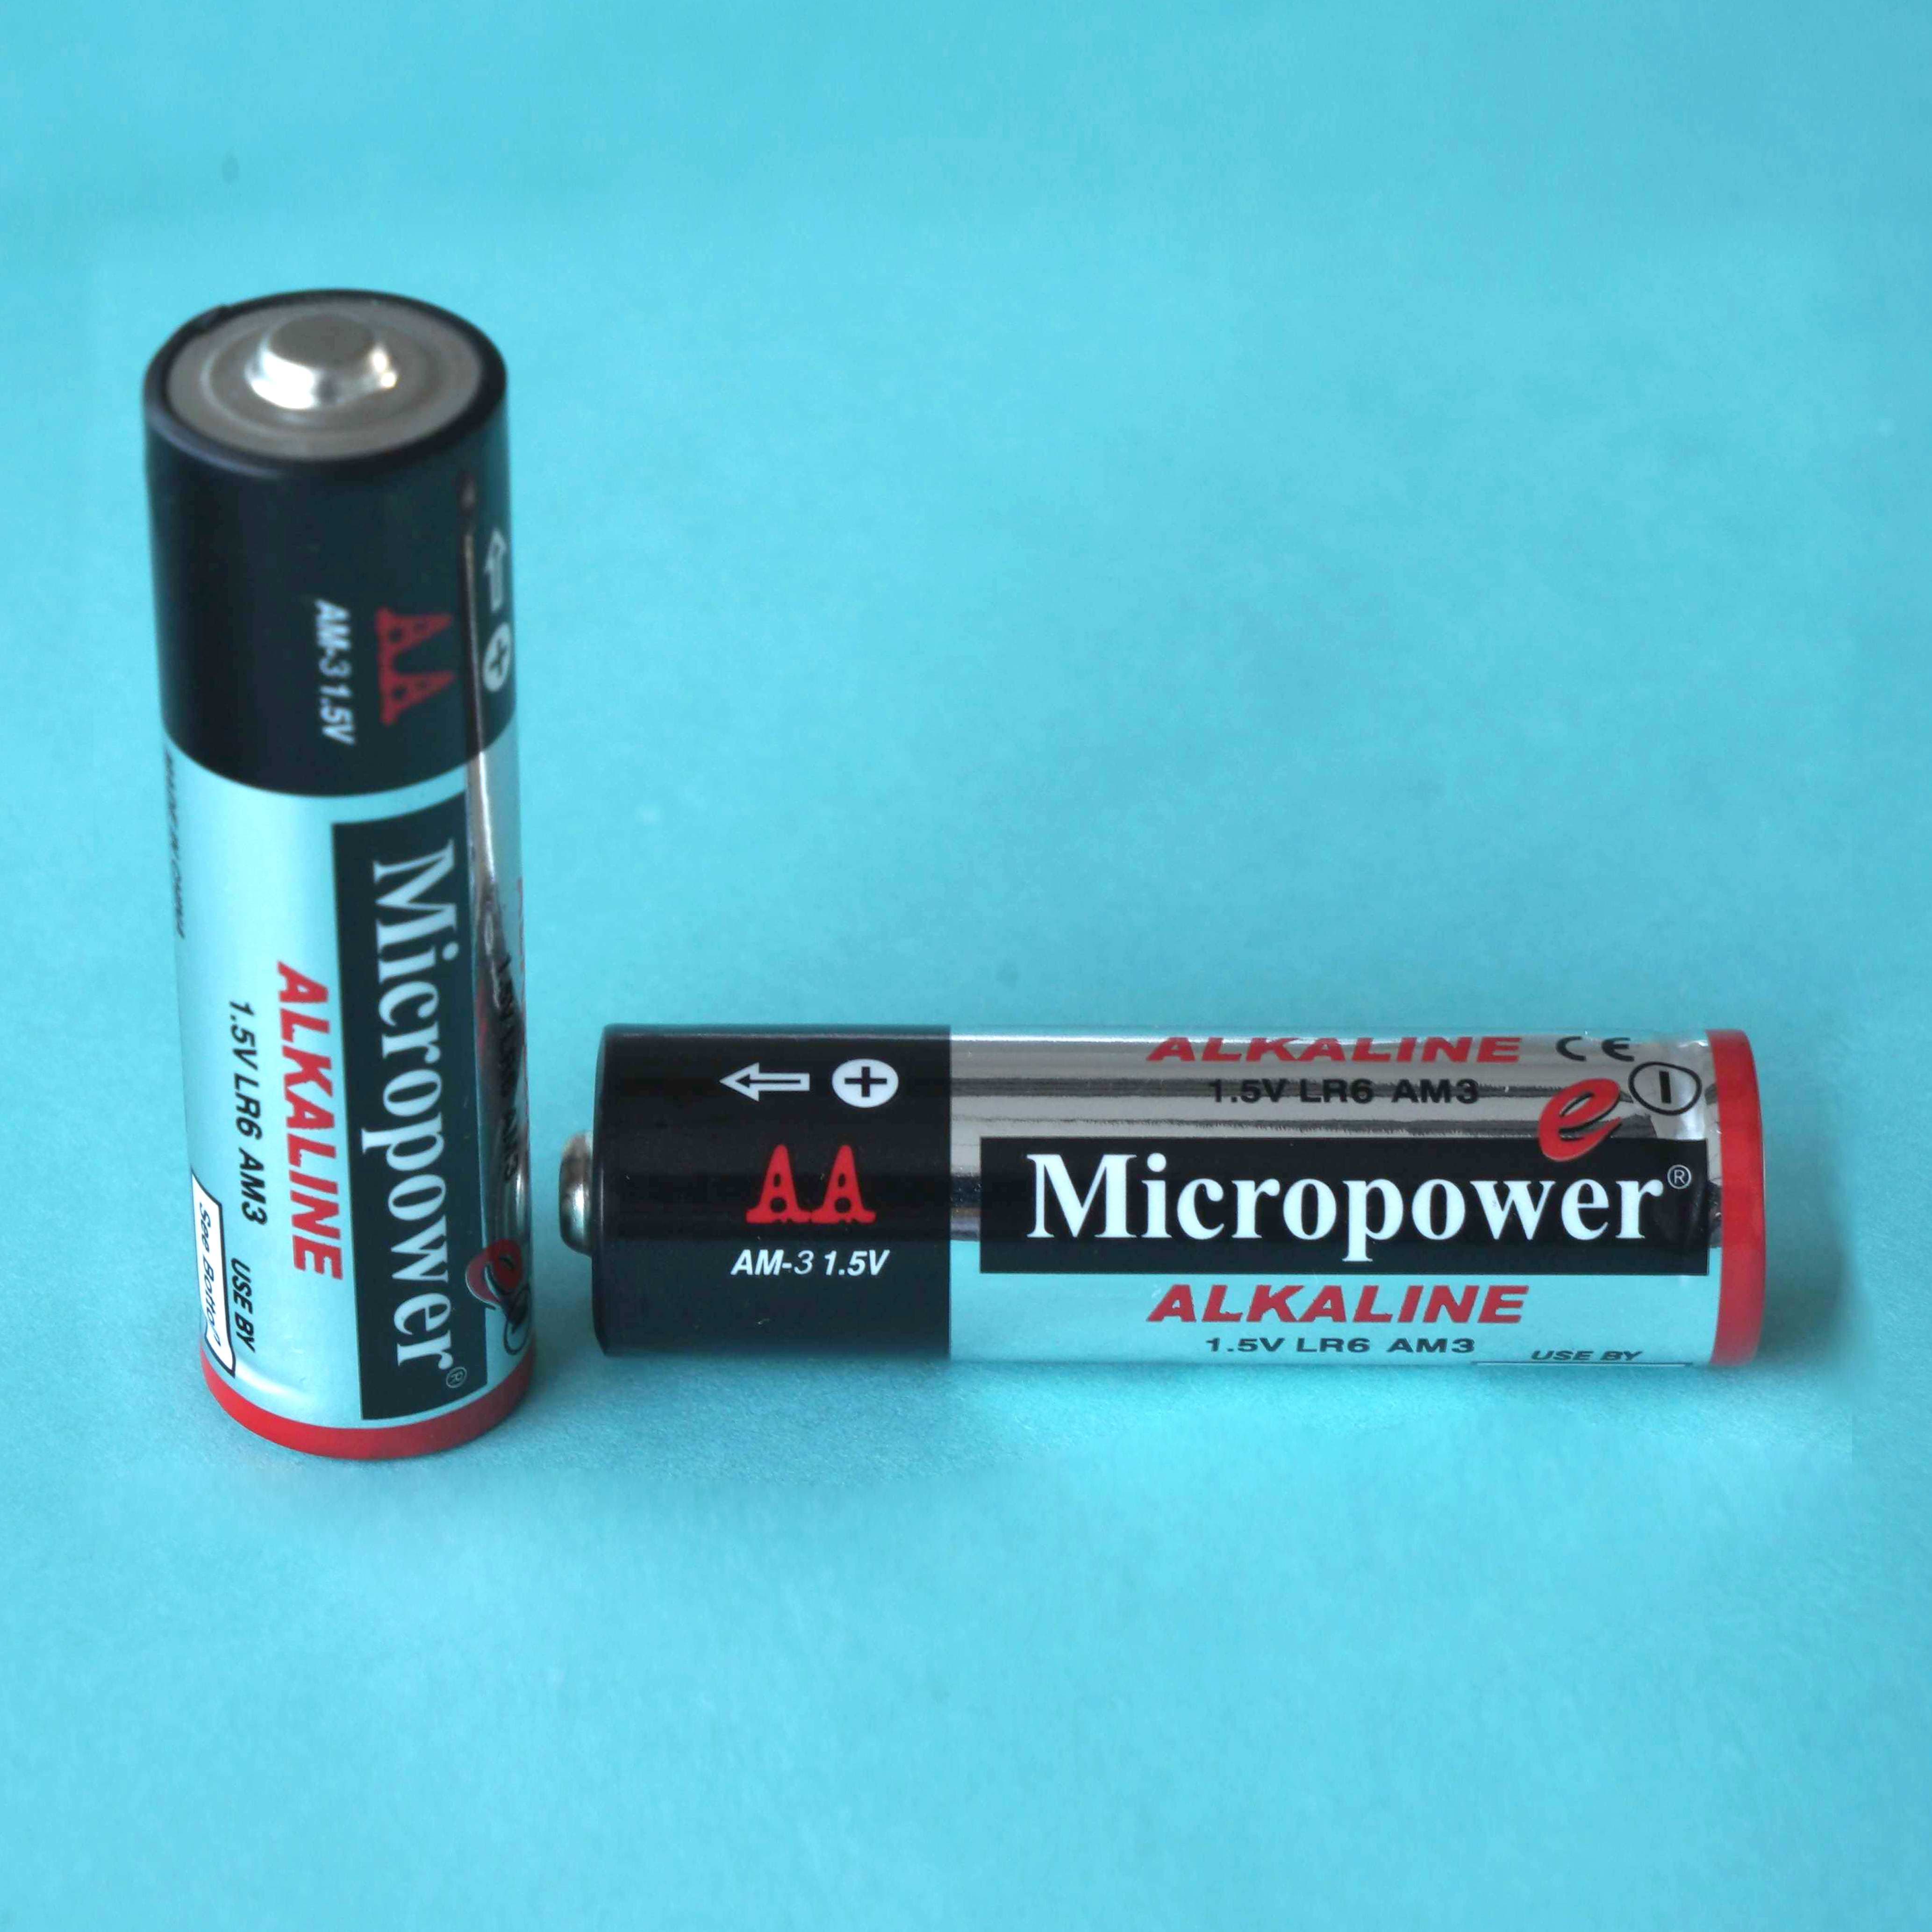 Super Power 1_5V AAA Alkaline Dry Battery